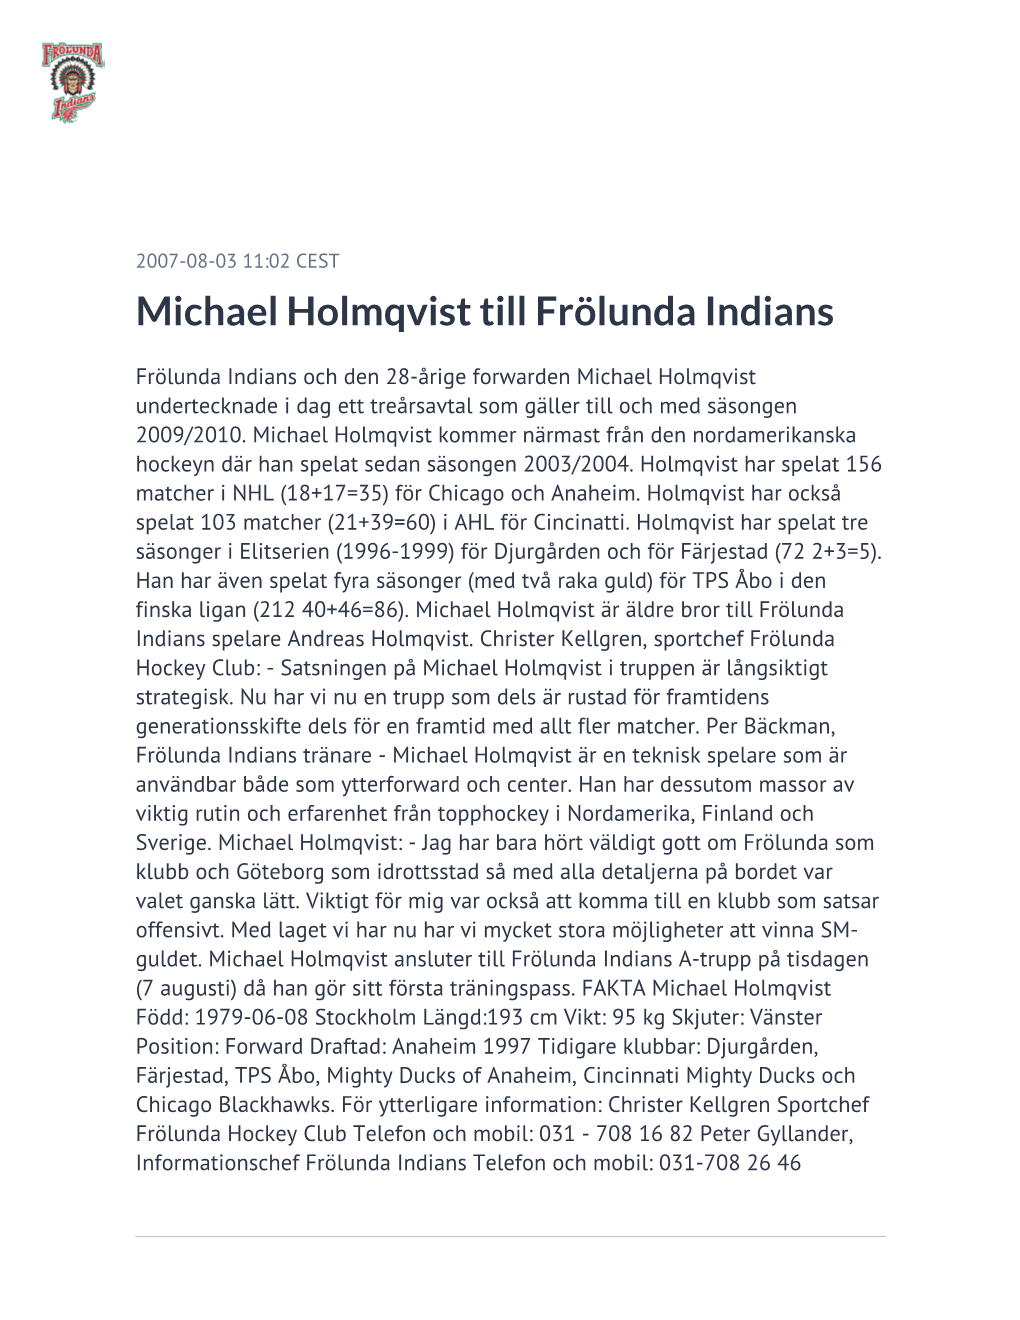 Michael Holmqvist Till Frölunda Indians